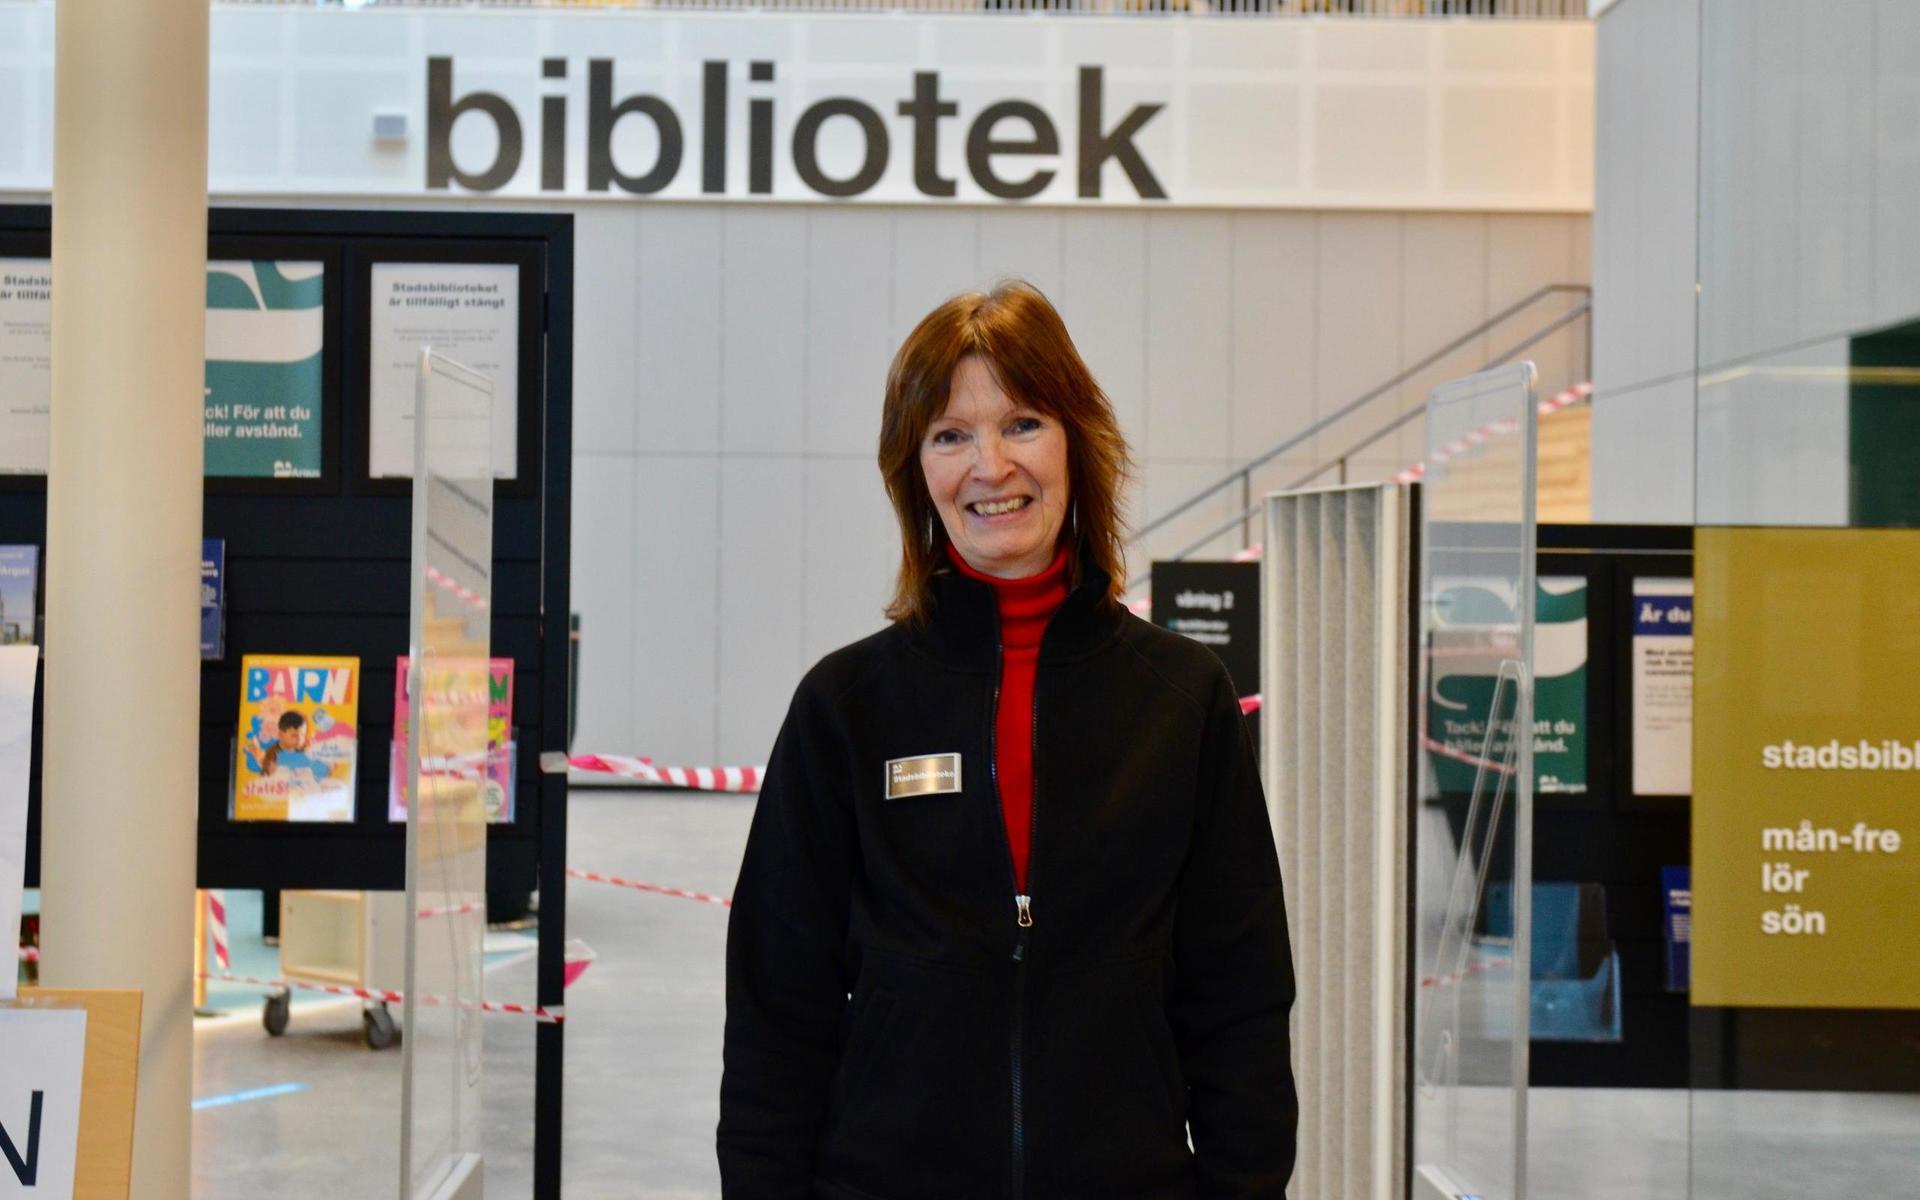 Bibliotekarien Christina Malmqvist berättar att det kändes självklart att hjälpa till.